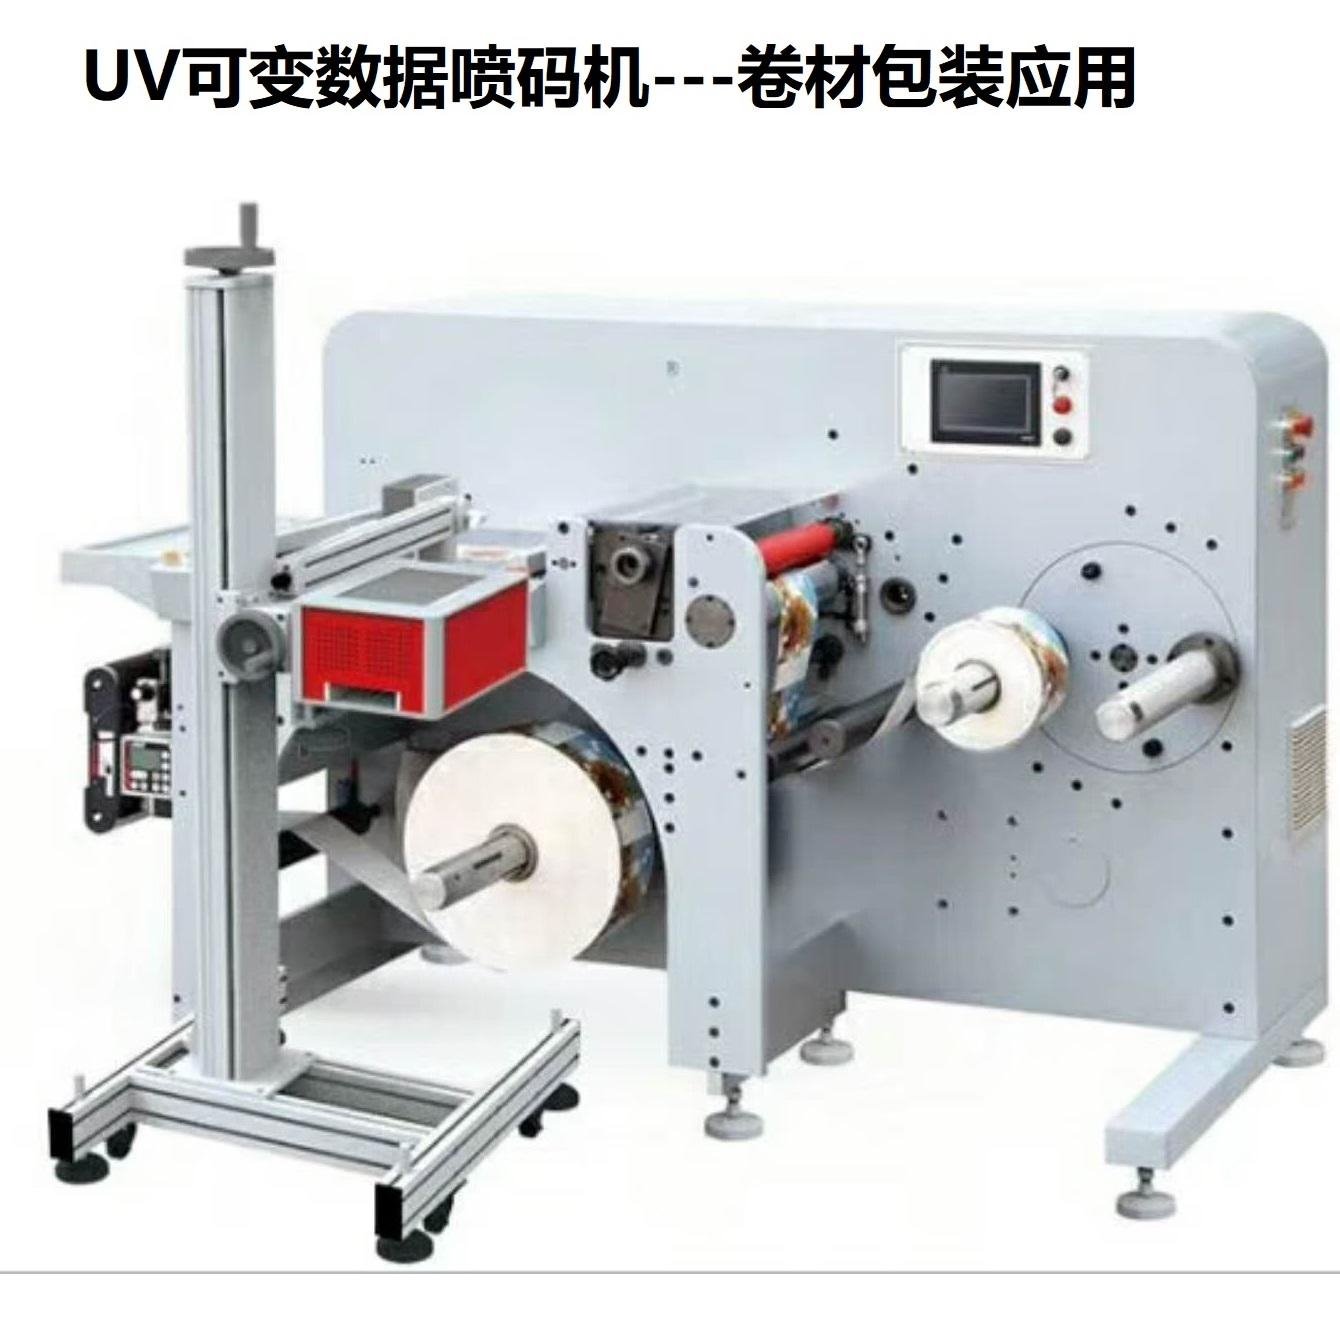 纸箱条码印刷机 彩色二维码印刷机 UV喷码机 可变数据喷码机 金博锐uv32喷码机